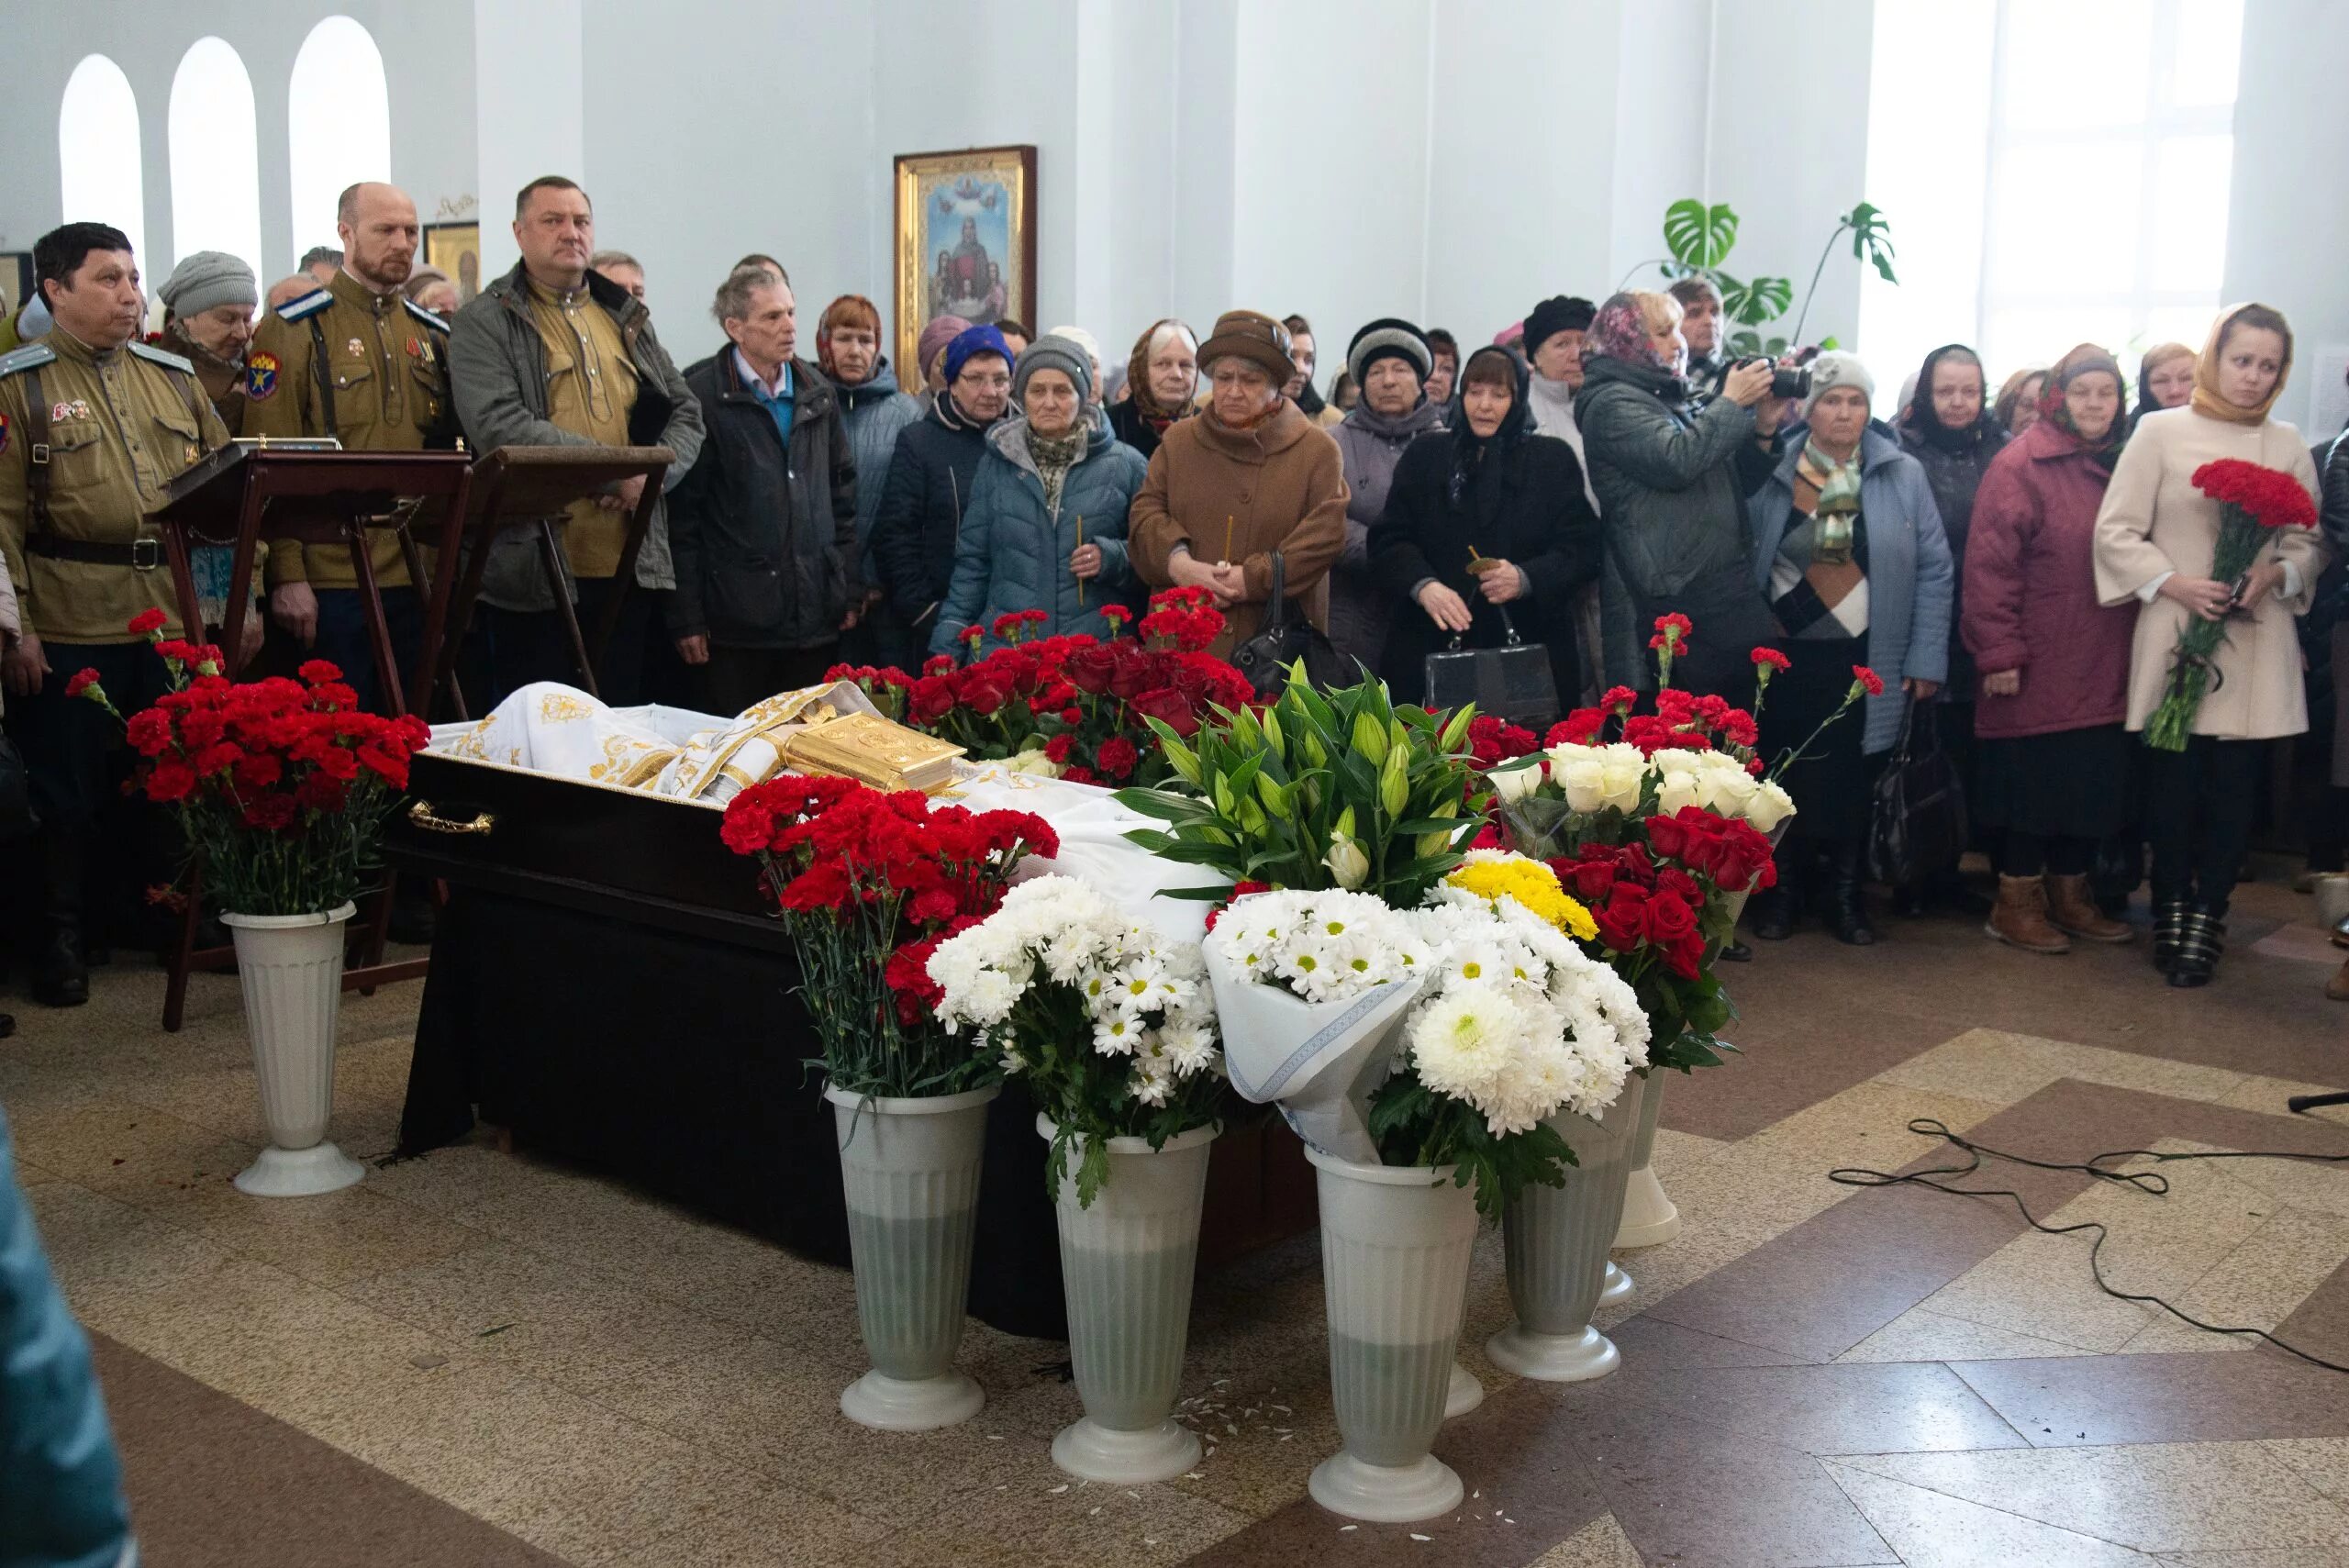 Нижнекамск новости на сегодня происшествия. Сегодня похоронили в Нижнекамске. Похороны в Нижнекамске сегодня. Протоиерей Нижнекамский.